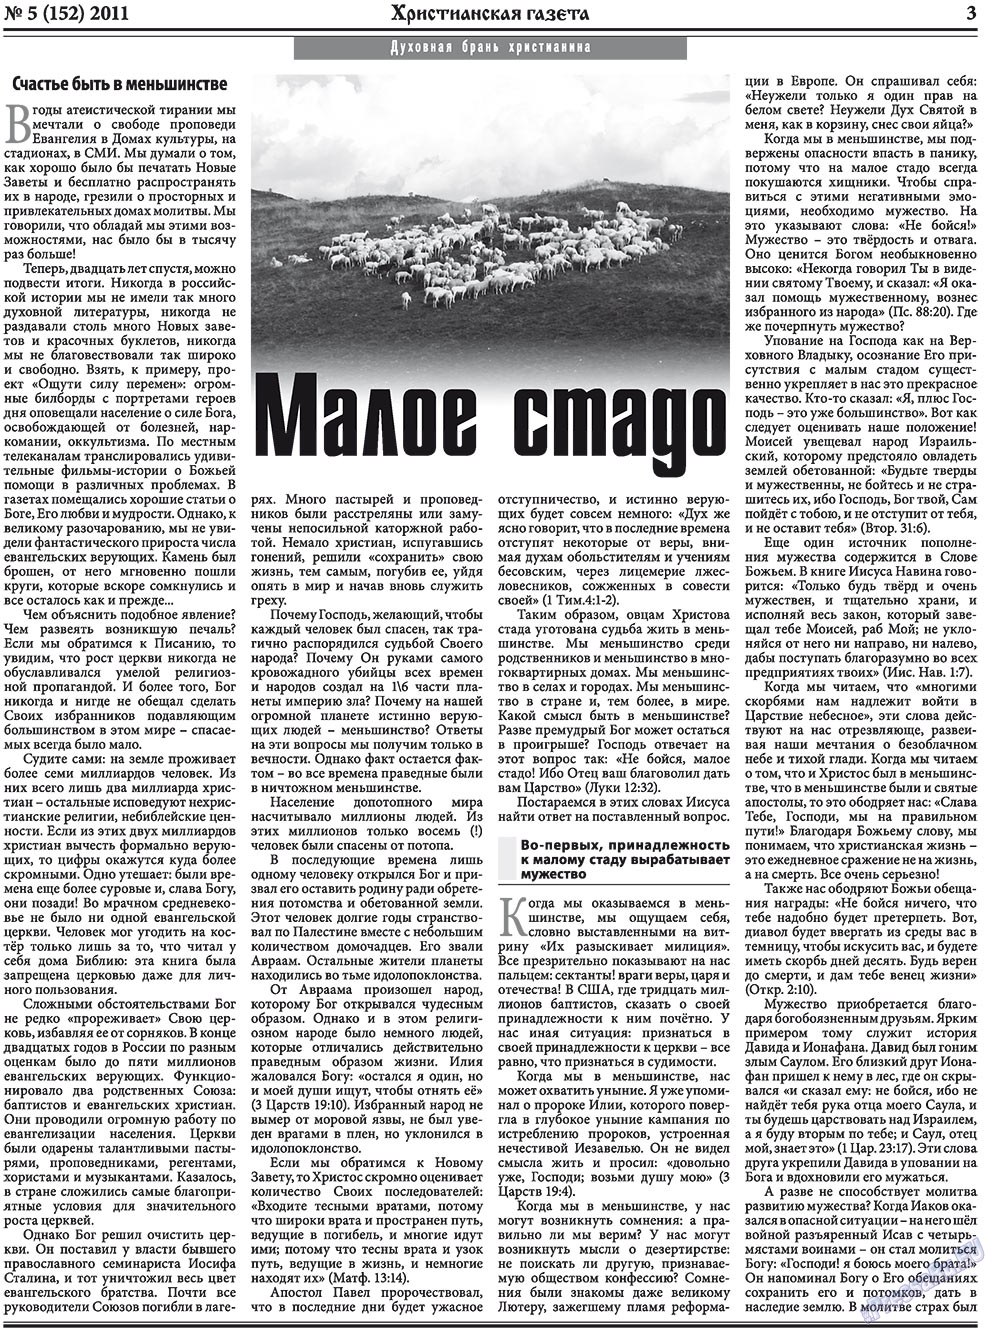 Христианская газета, газета. 2011 №5 стр.3